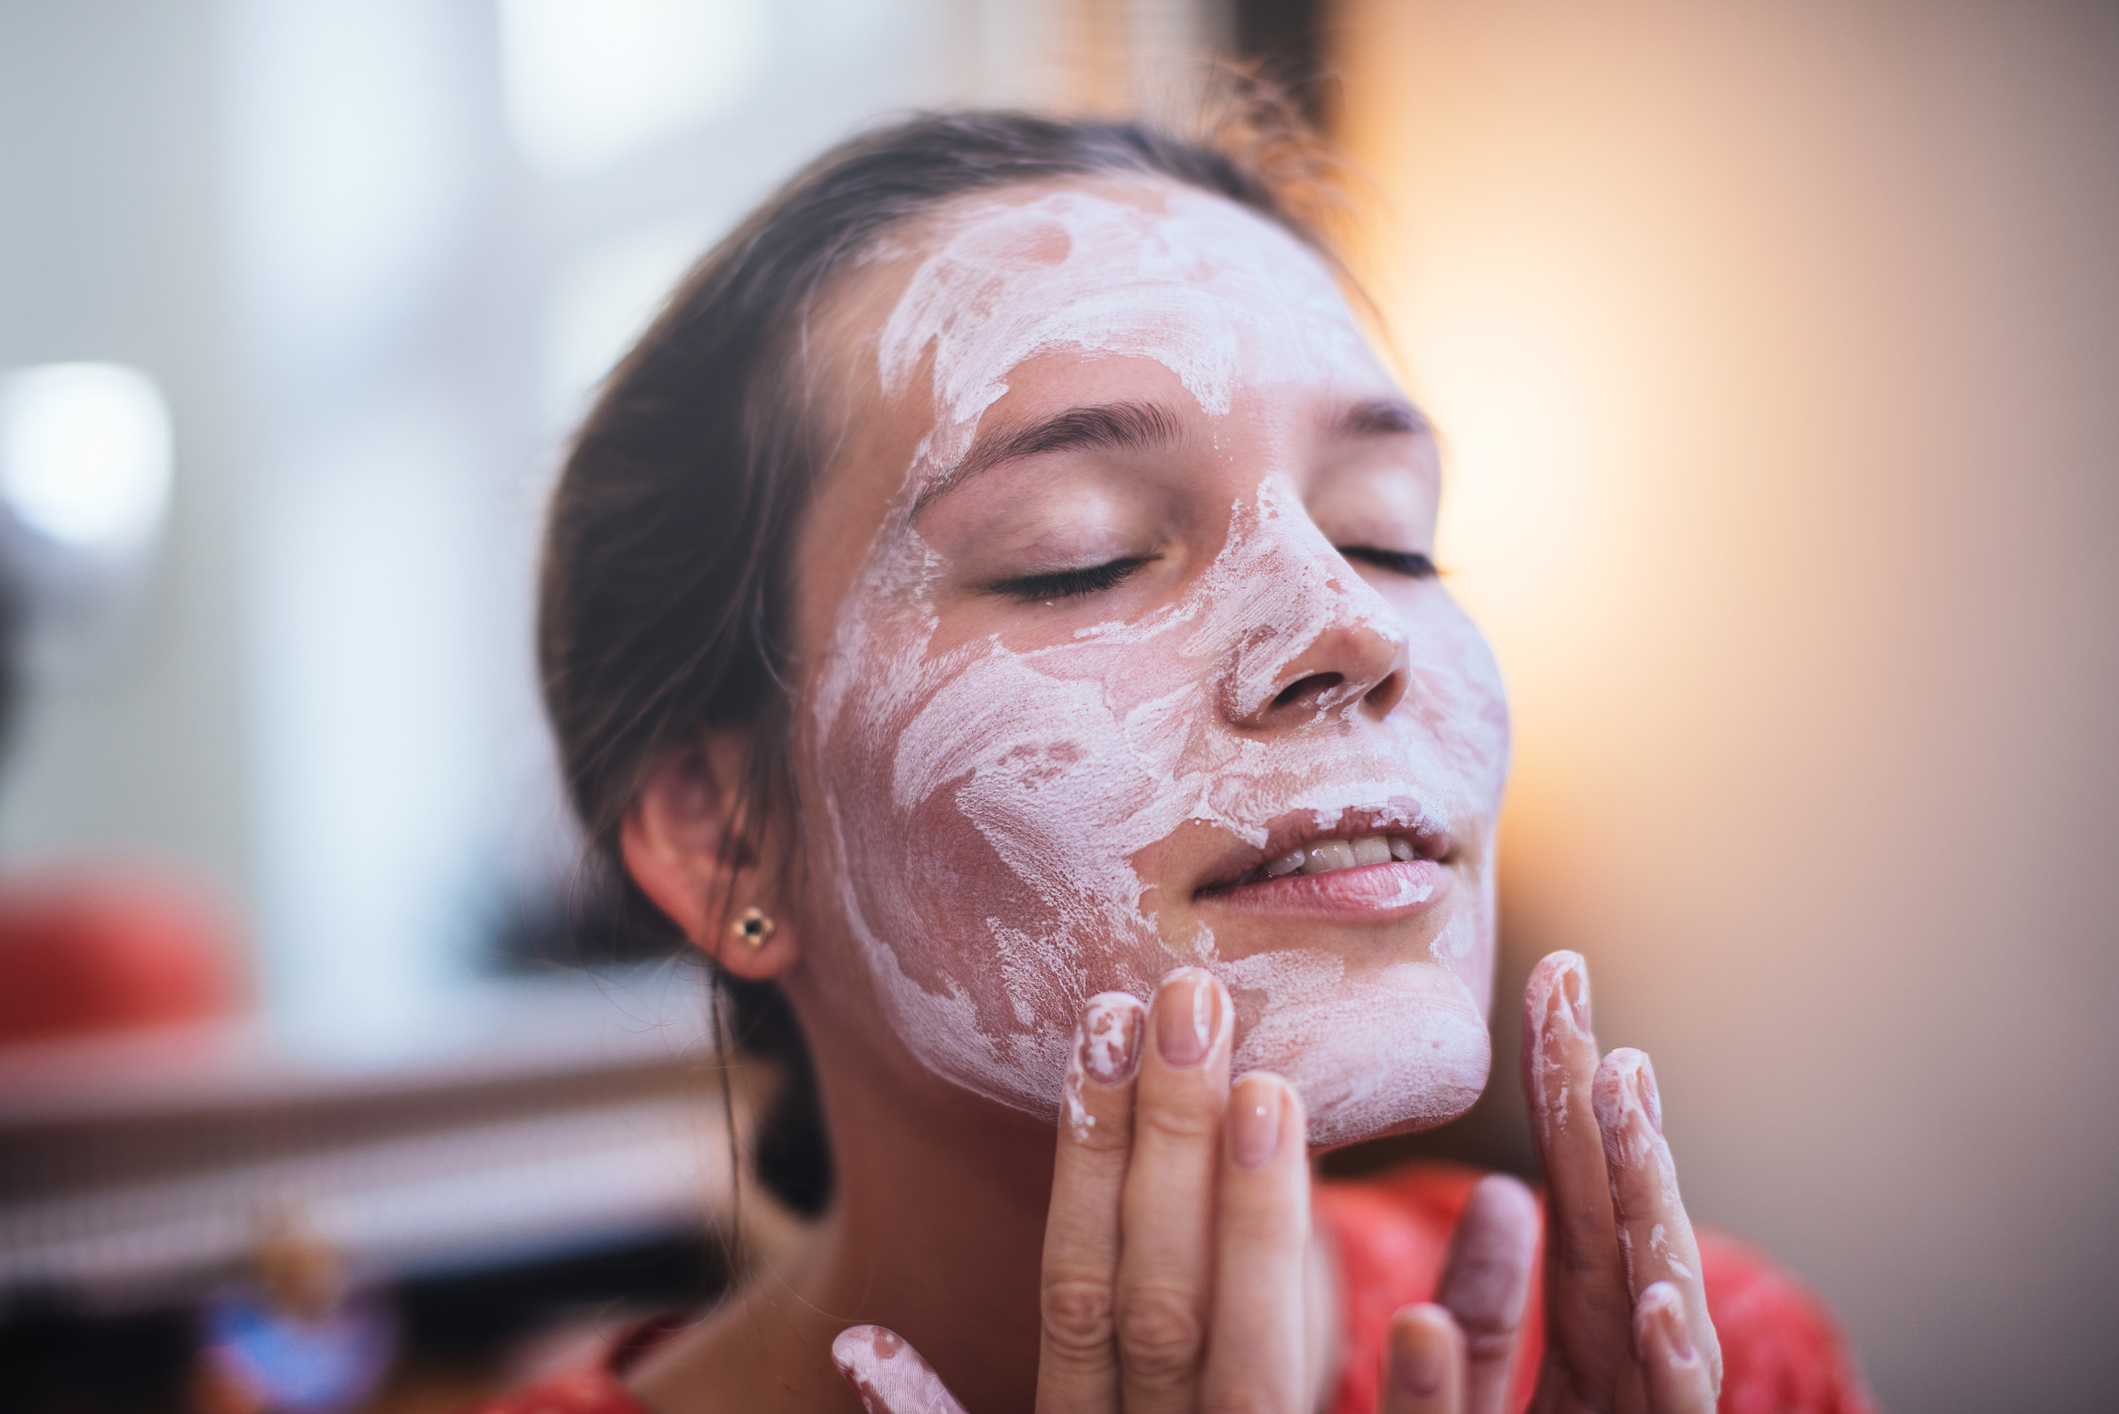 DIY arcpakolás a ragyogó bőrért | Marie Claire